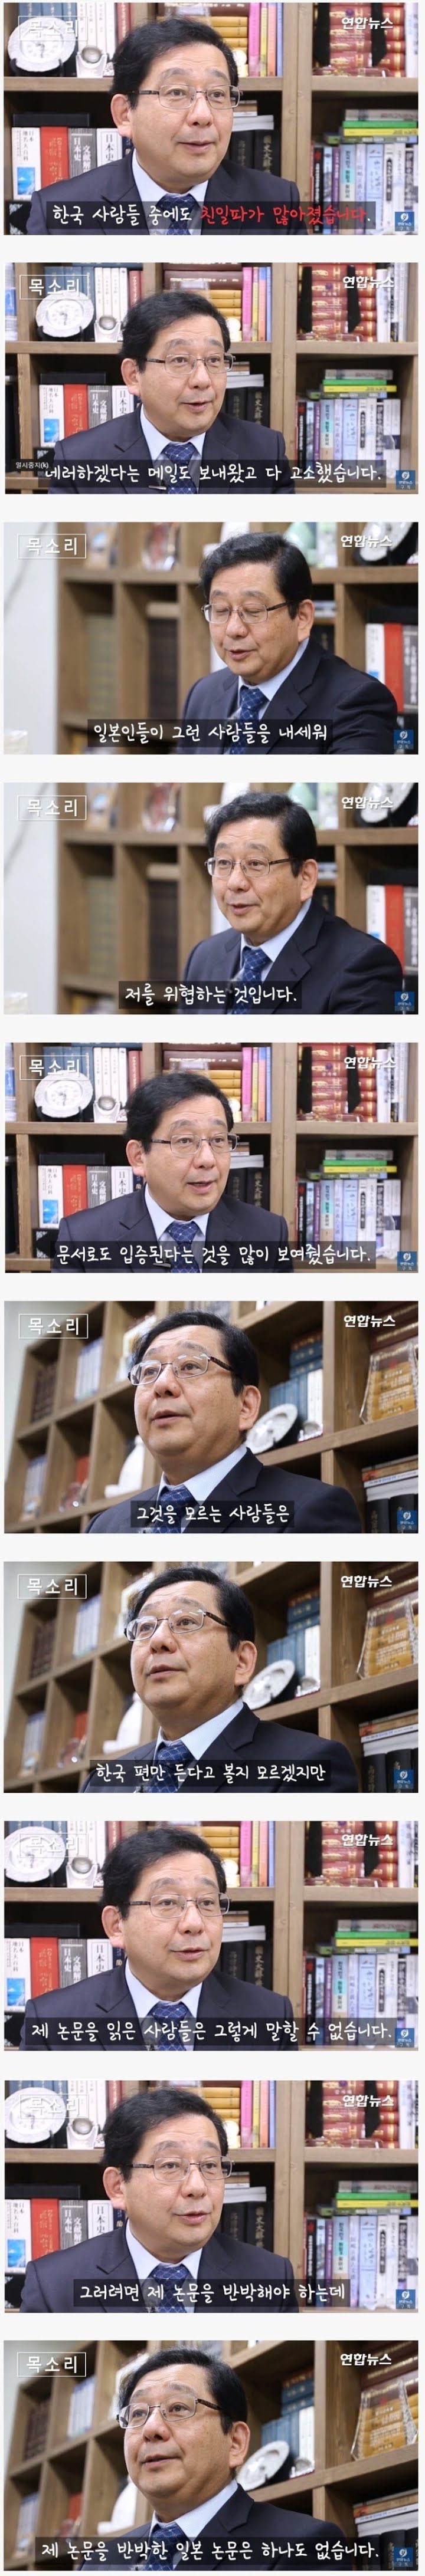 한국인들을 고소한 일본인 교수